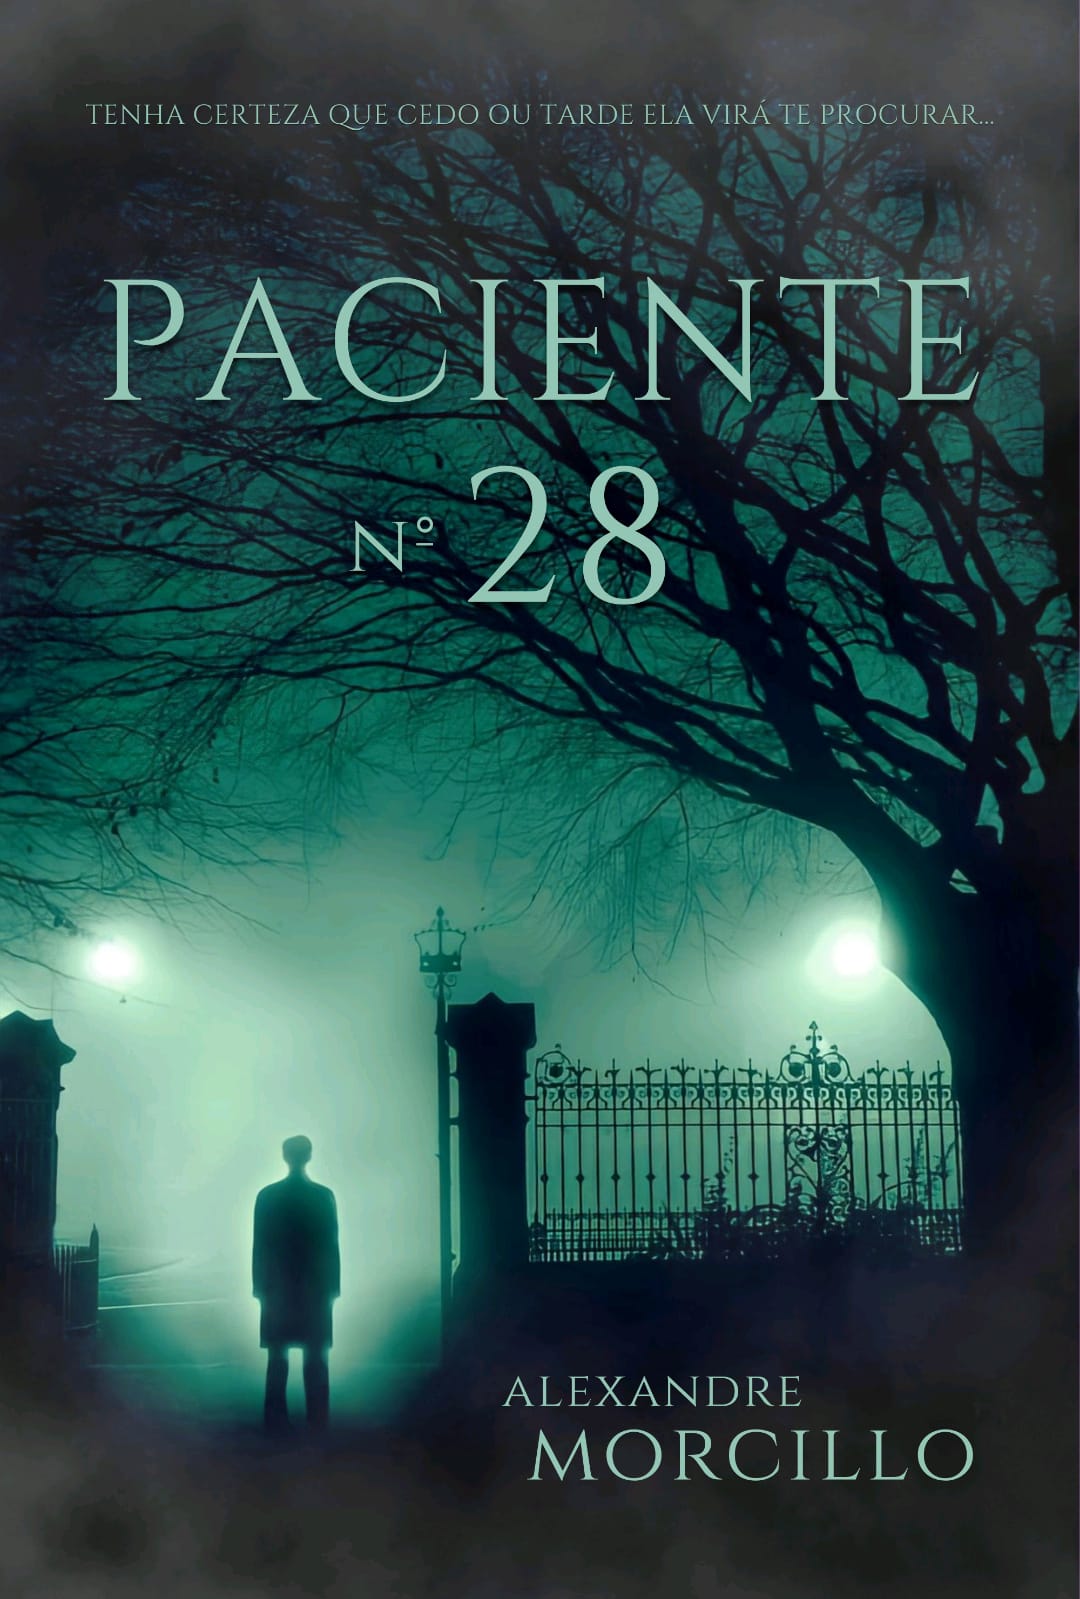 Escritor Alexandre Morcillo lança o livro 'Paciente nº 28', no Estação Net Cinema, em Botafogo (Foto: Divulgação)